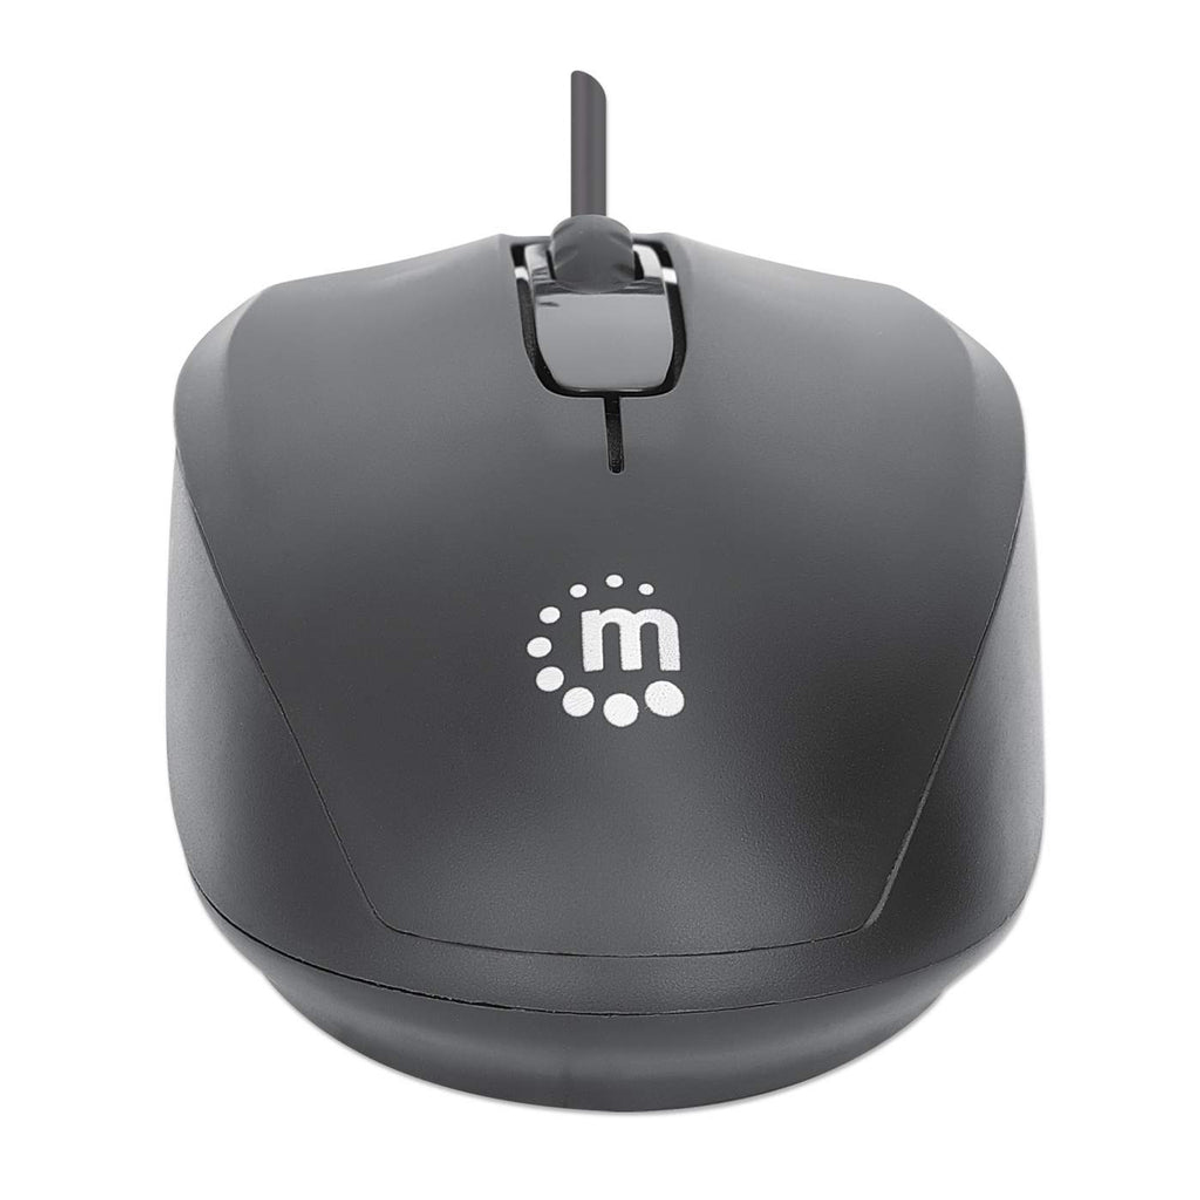 Maus, Ausgabe MANHATTAN II USB-Maus Comfort MANHATTAN Eingabe / Mäuse Schwarz Optische